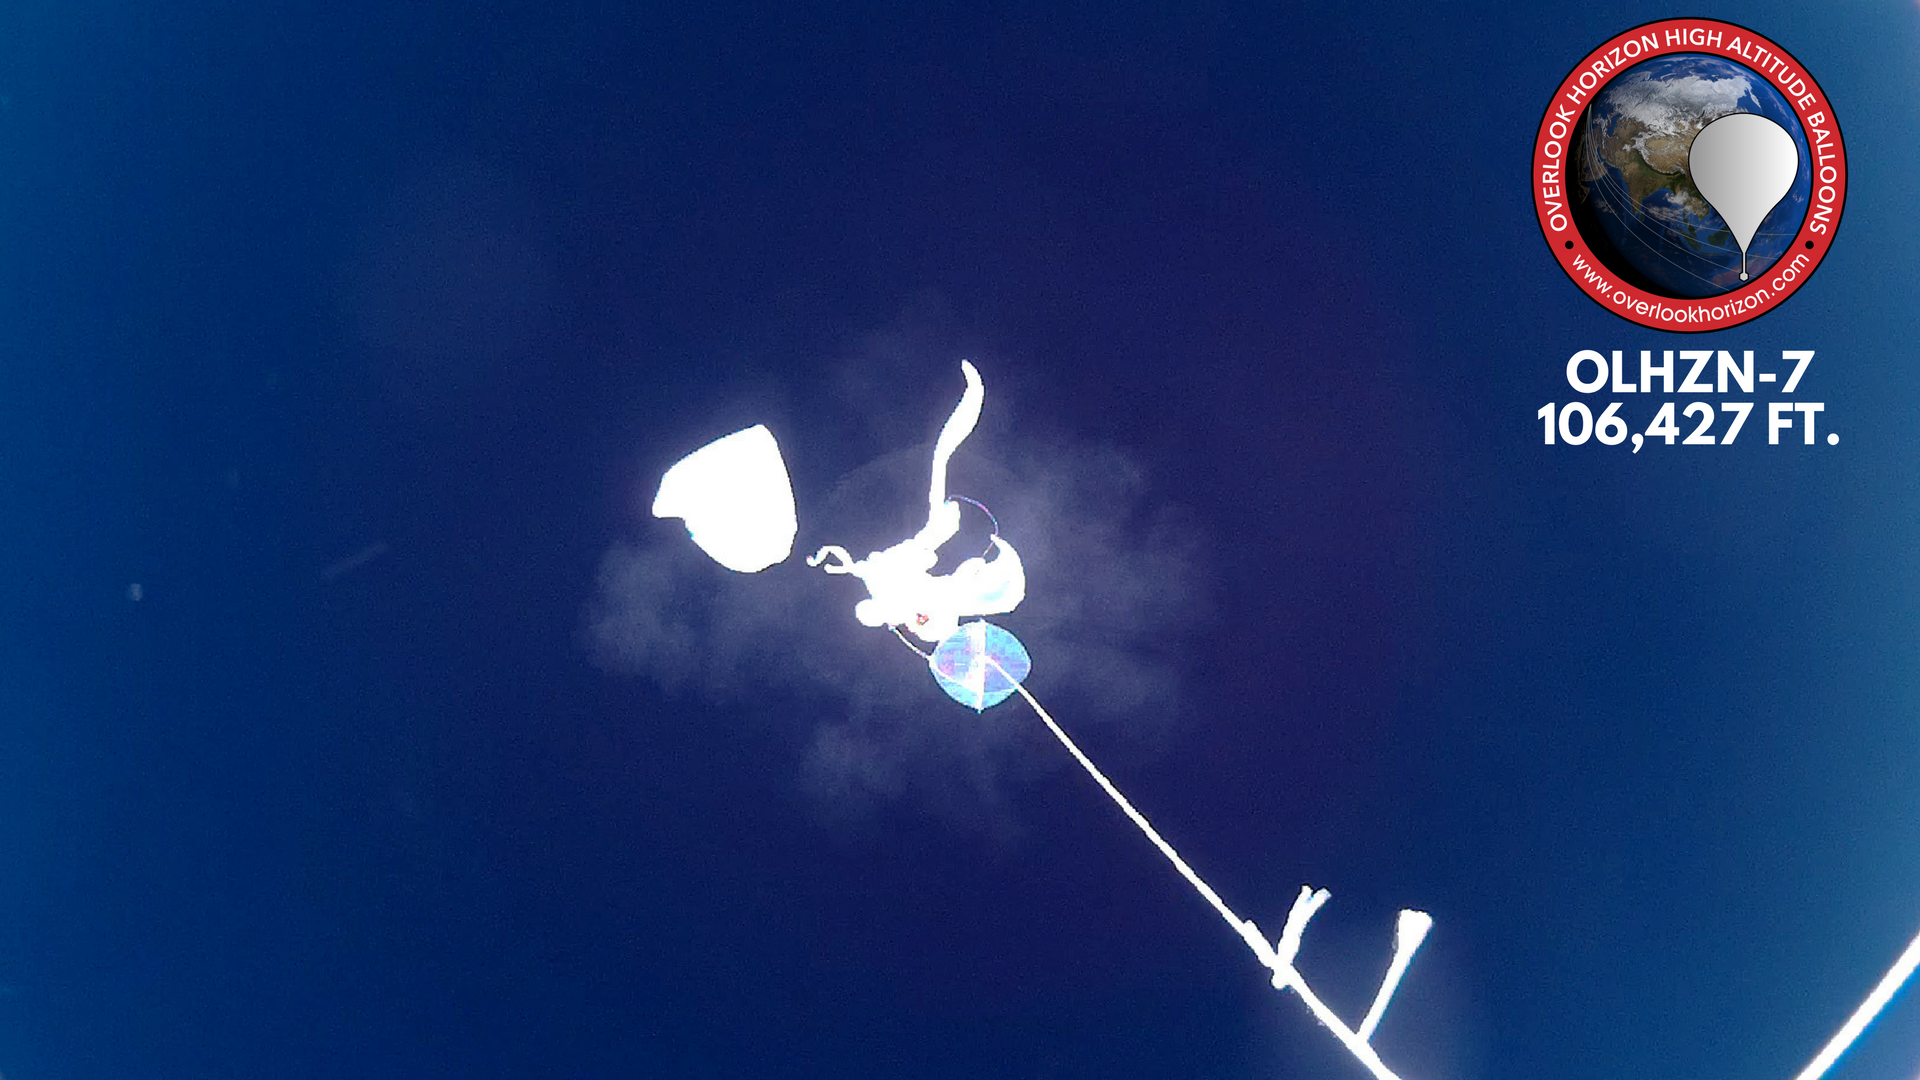 OLHZN-7 Weather Balloon Burst